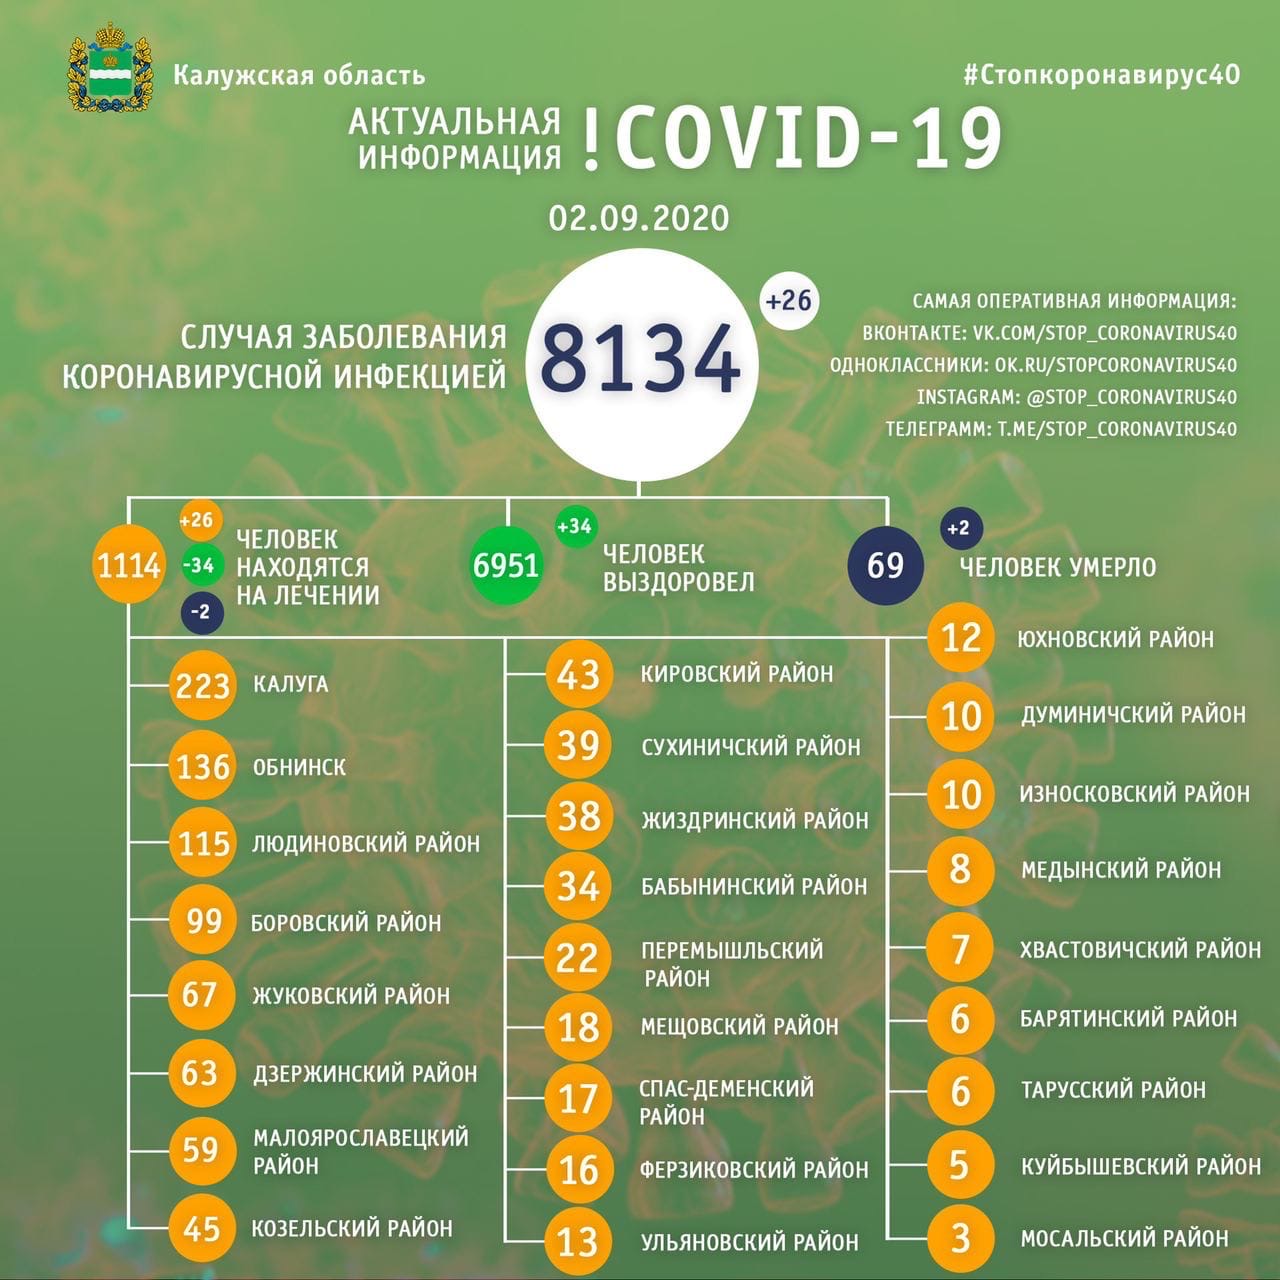 Официальная статистика по коронавирусу в Калужской области на 2 сентября 2020 года.